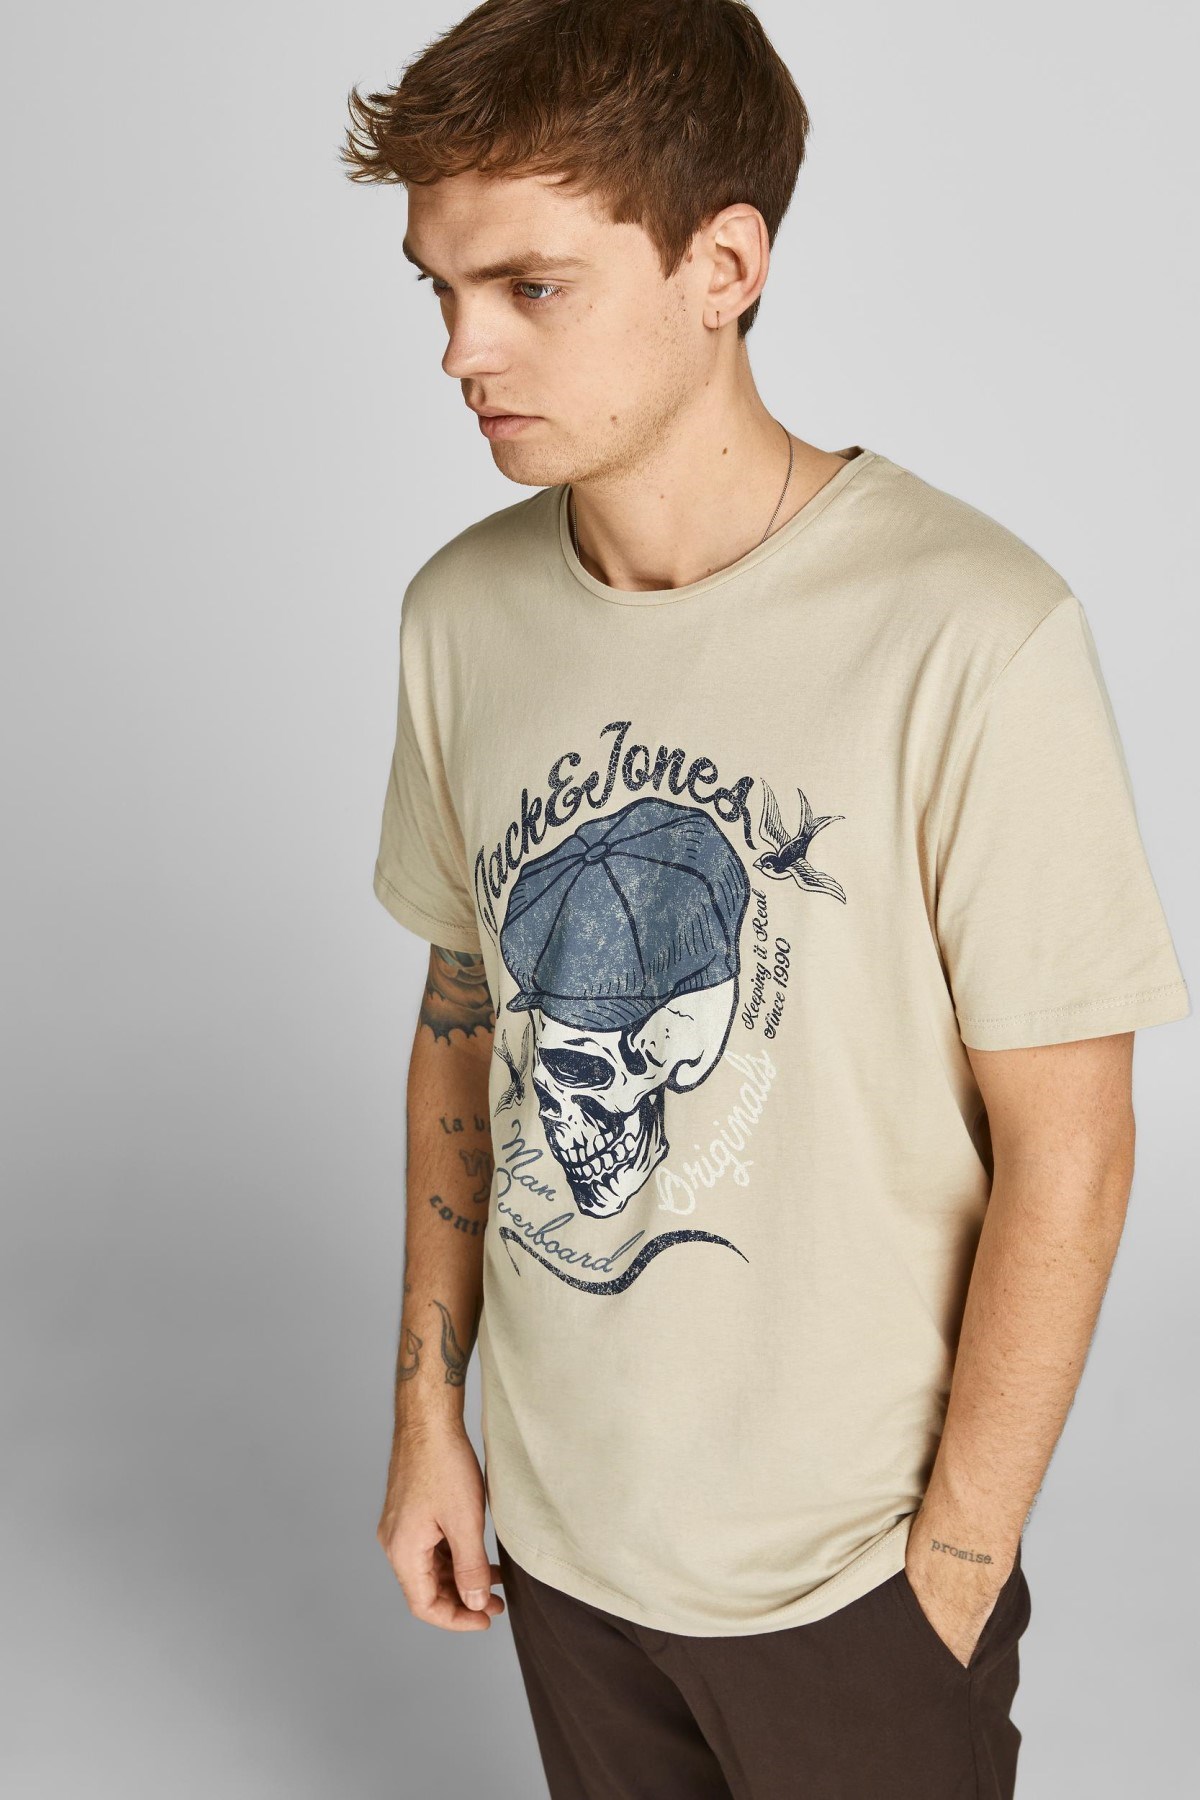 Jack Jones Erkek T-Shirt 12205684 Peyote